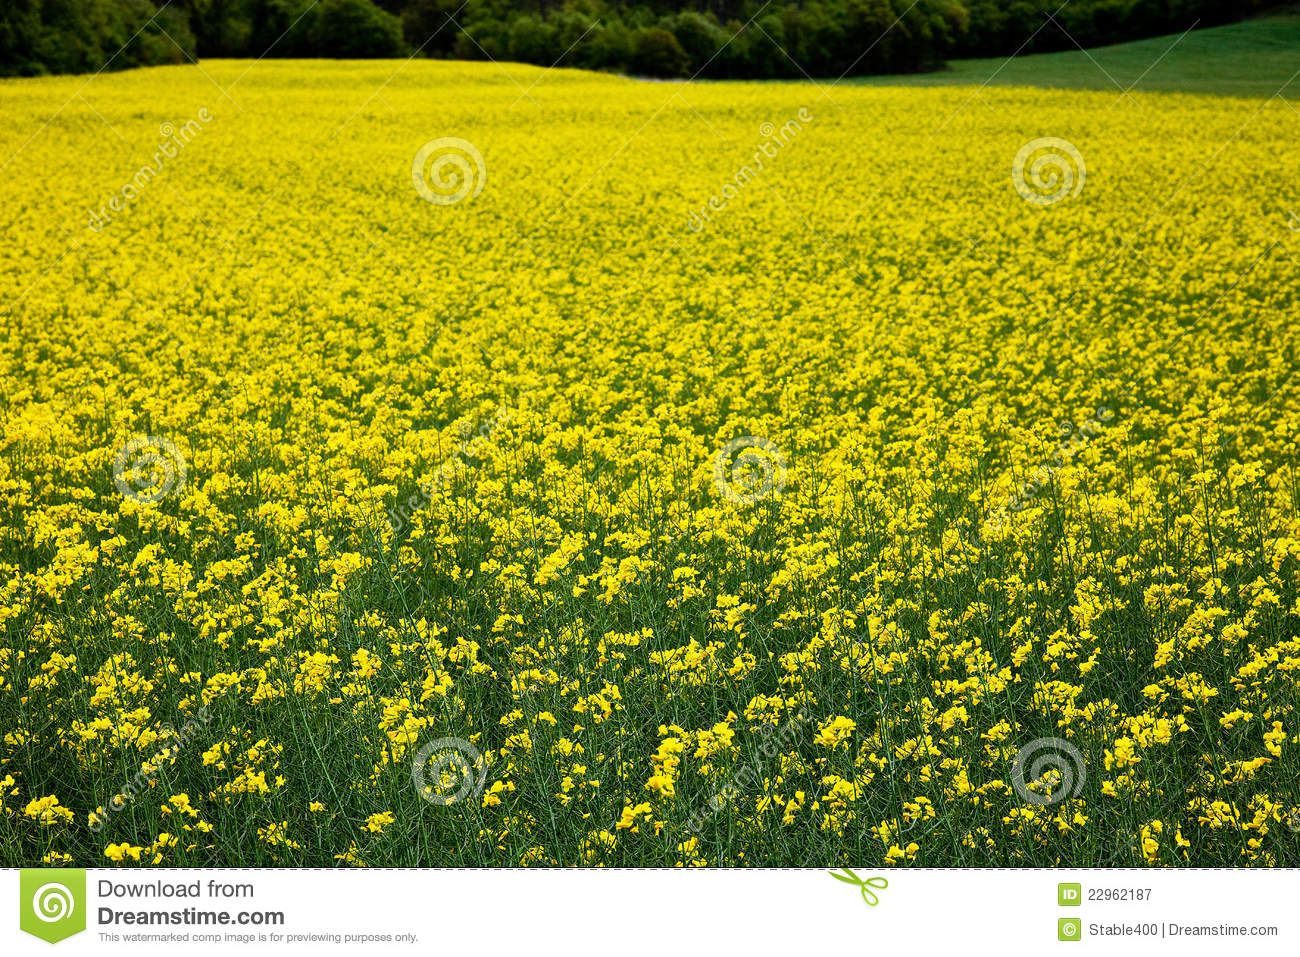 oilseed-rape-plants-22962187.jpg